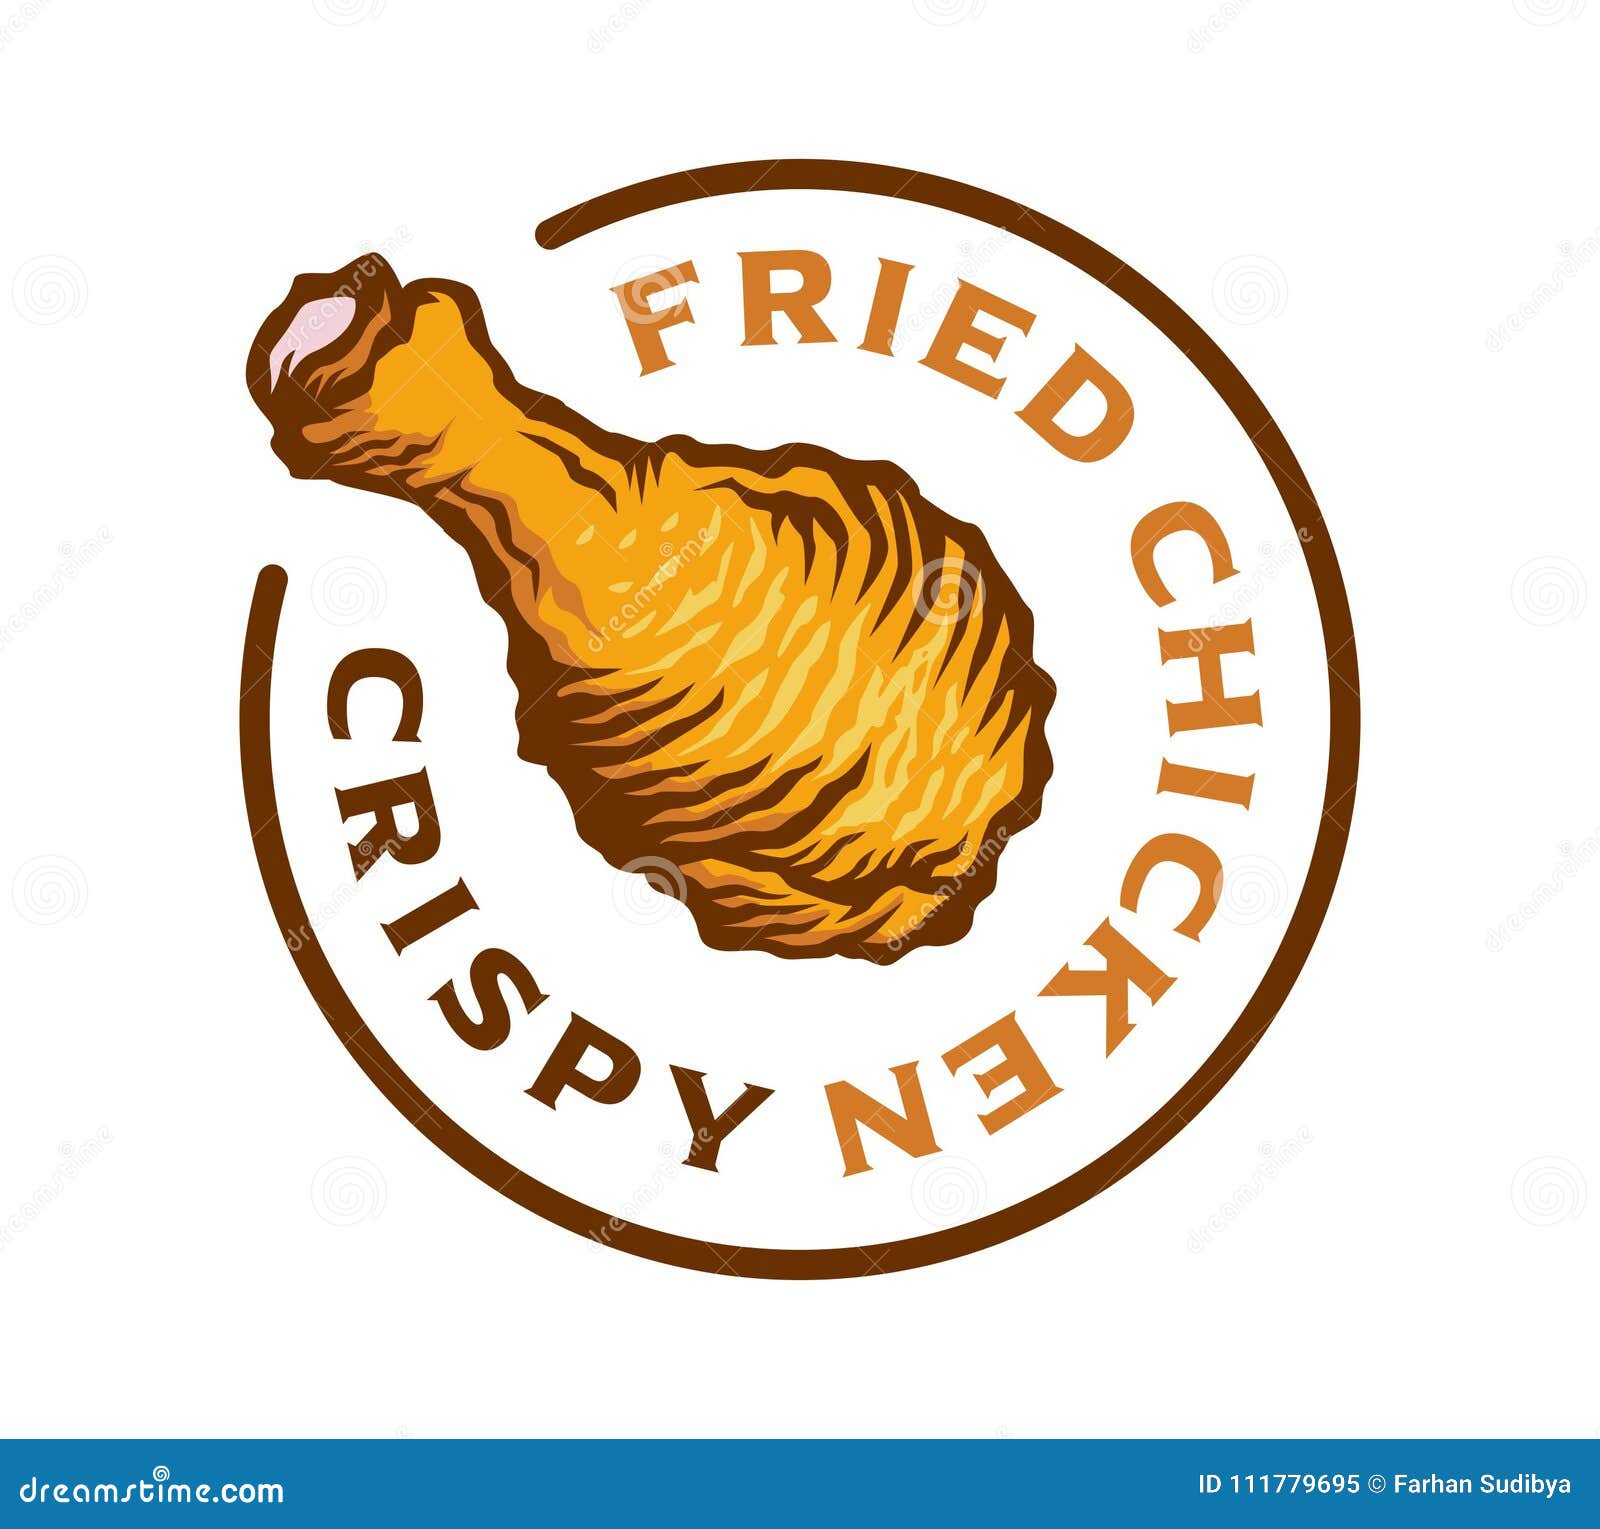 Chicken Logo Cartoon Stock Illustrations Chicken Logo Cartoon | The ...